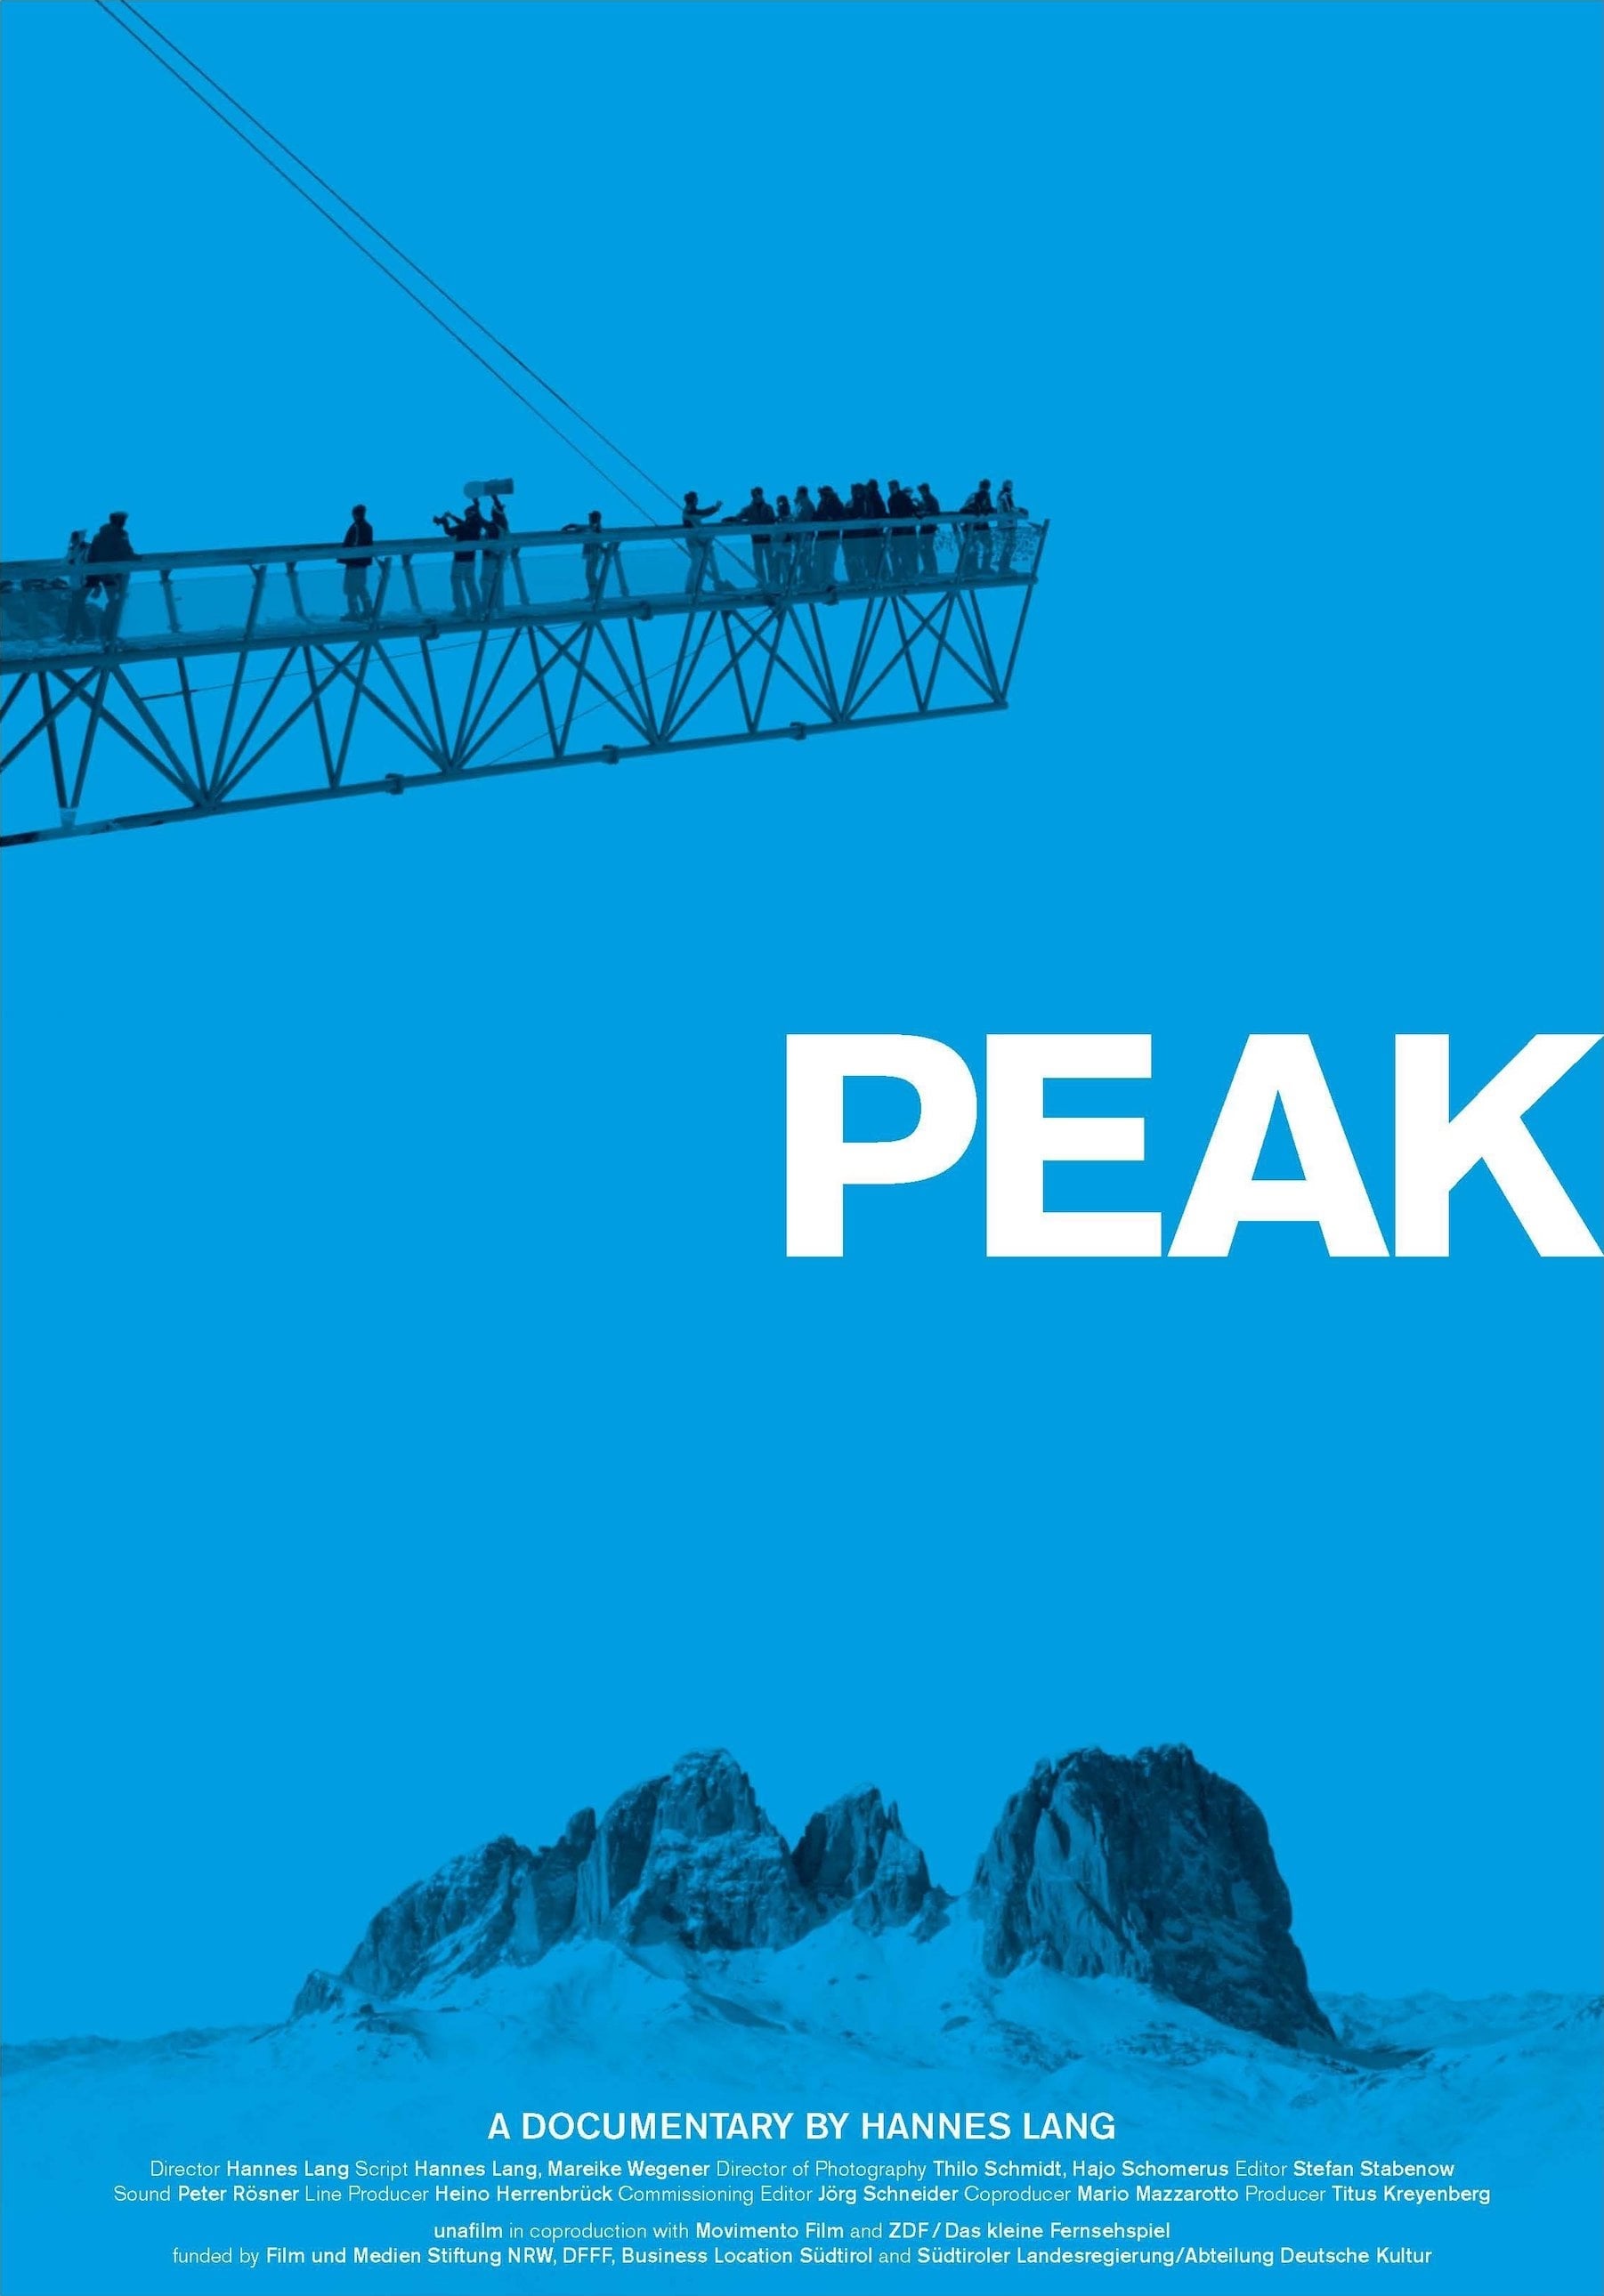 Peak - Über allen Gipfeln